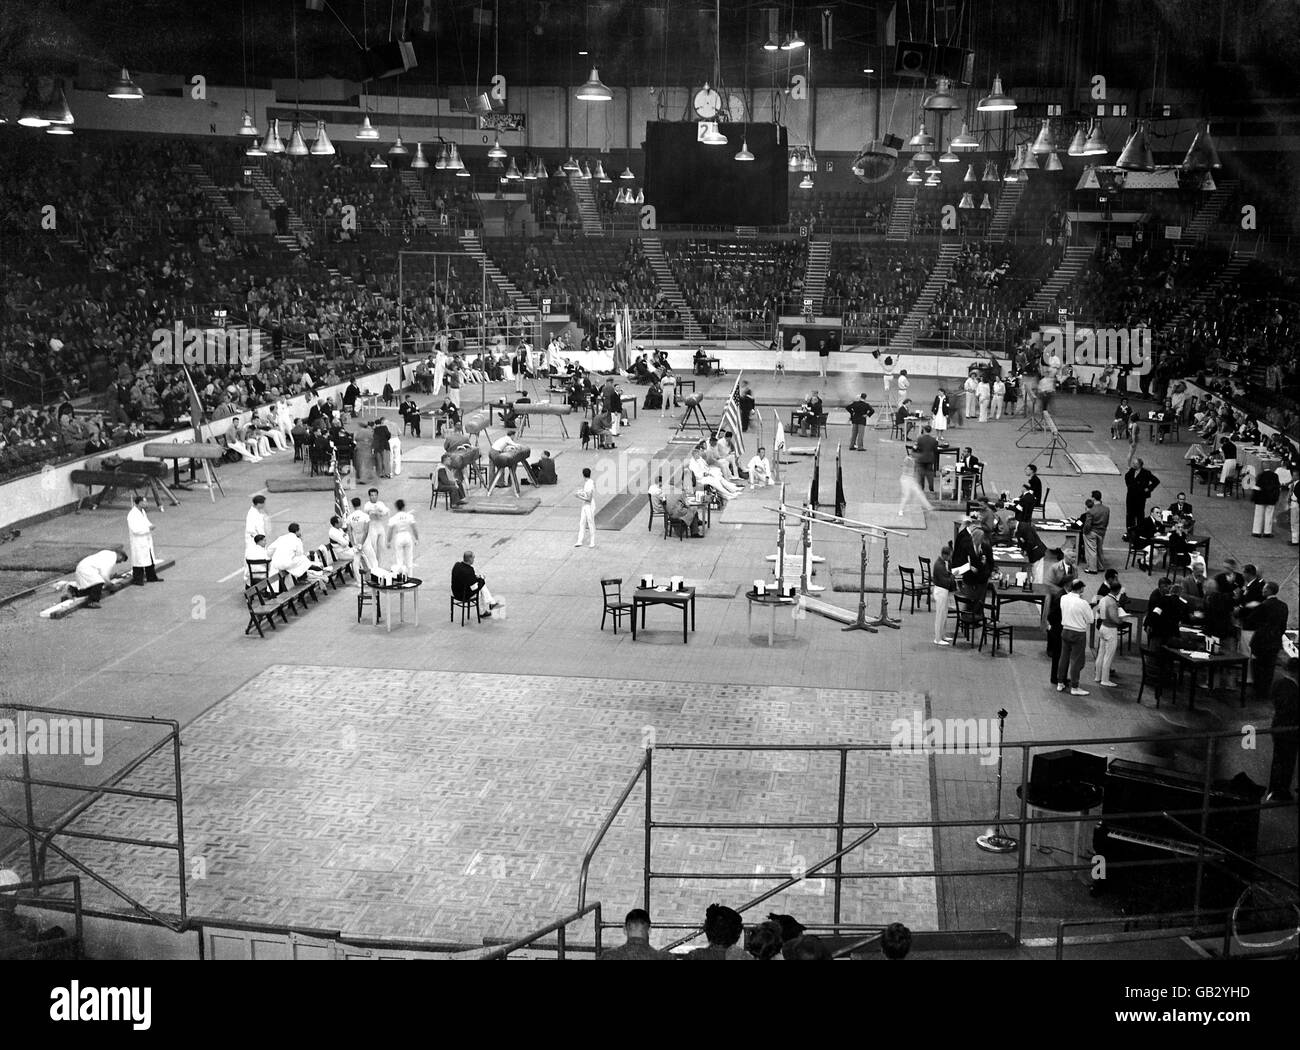 Gymnastik - Olympische Spiele In London. Allgemeiner Blick auf die Earl's Court Arena während der Turnveranstaltungen Stockfoto